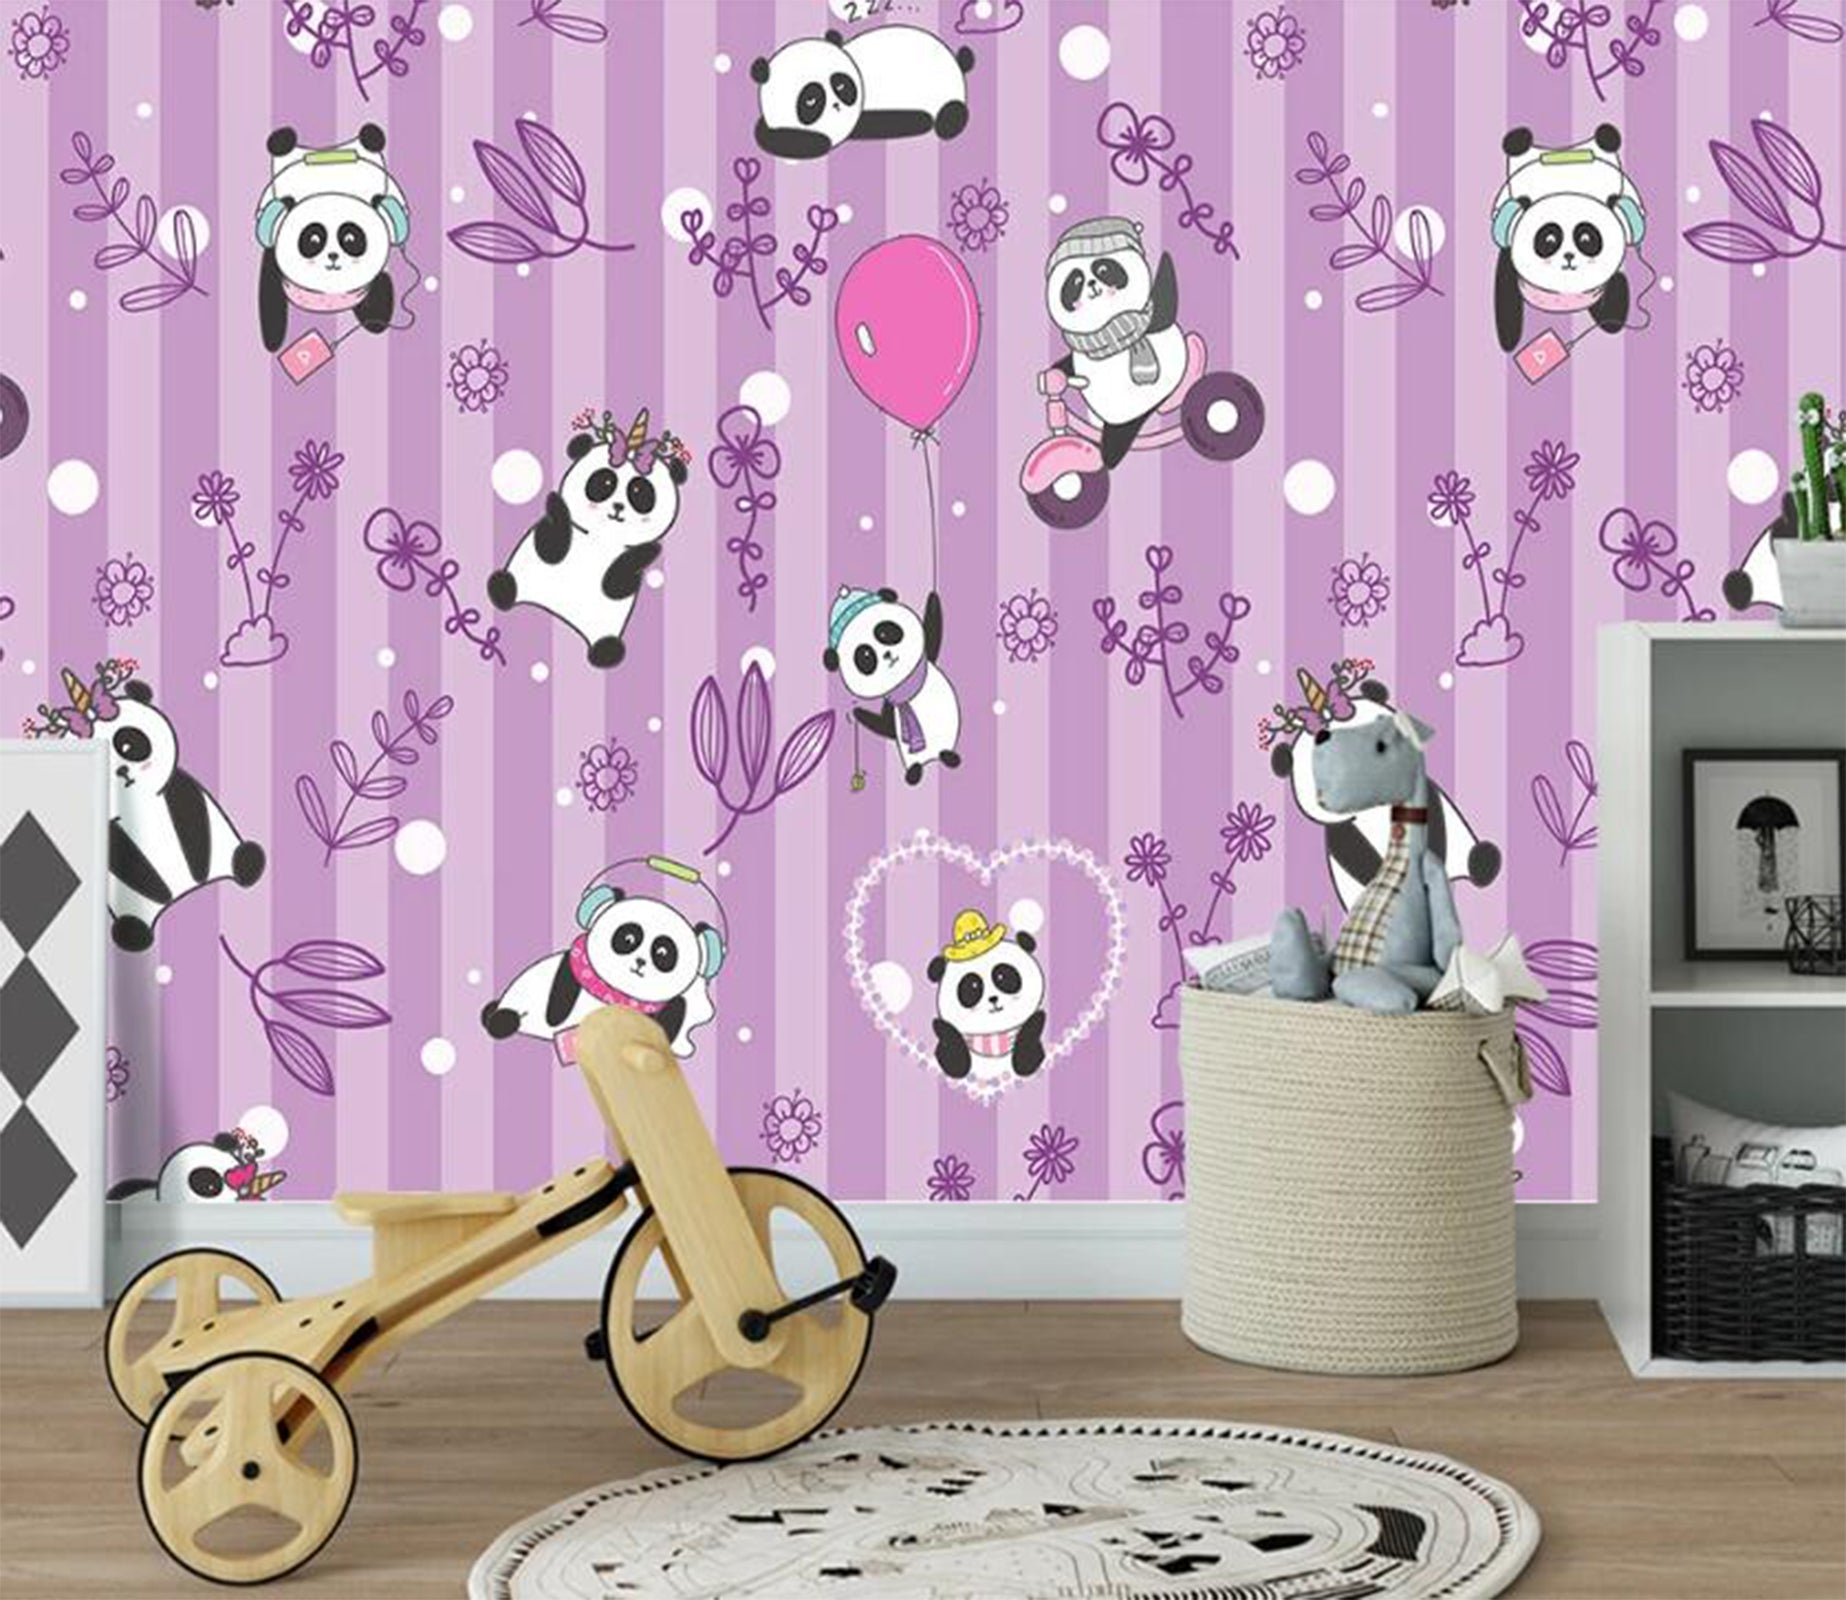 3D Cute Pandas 2314 Wall Murals